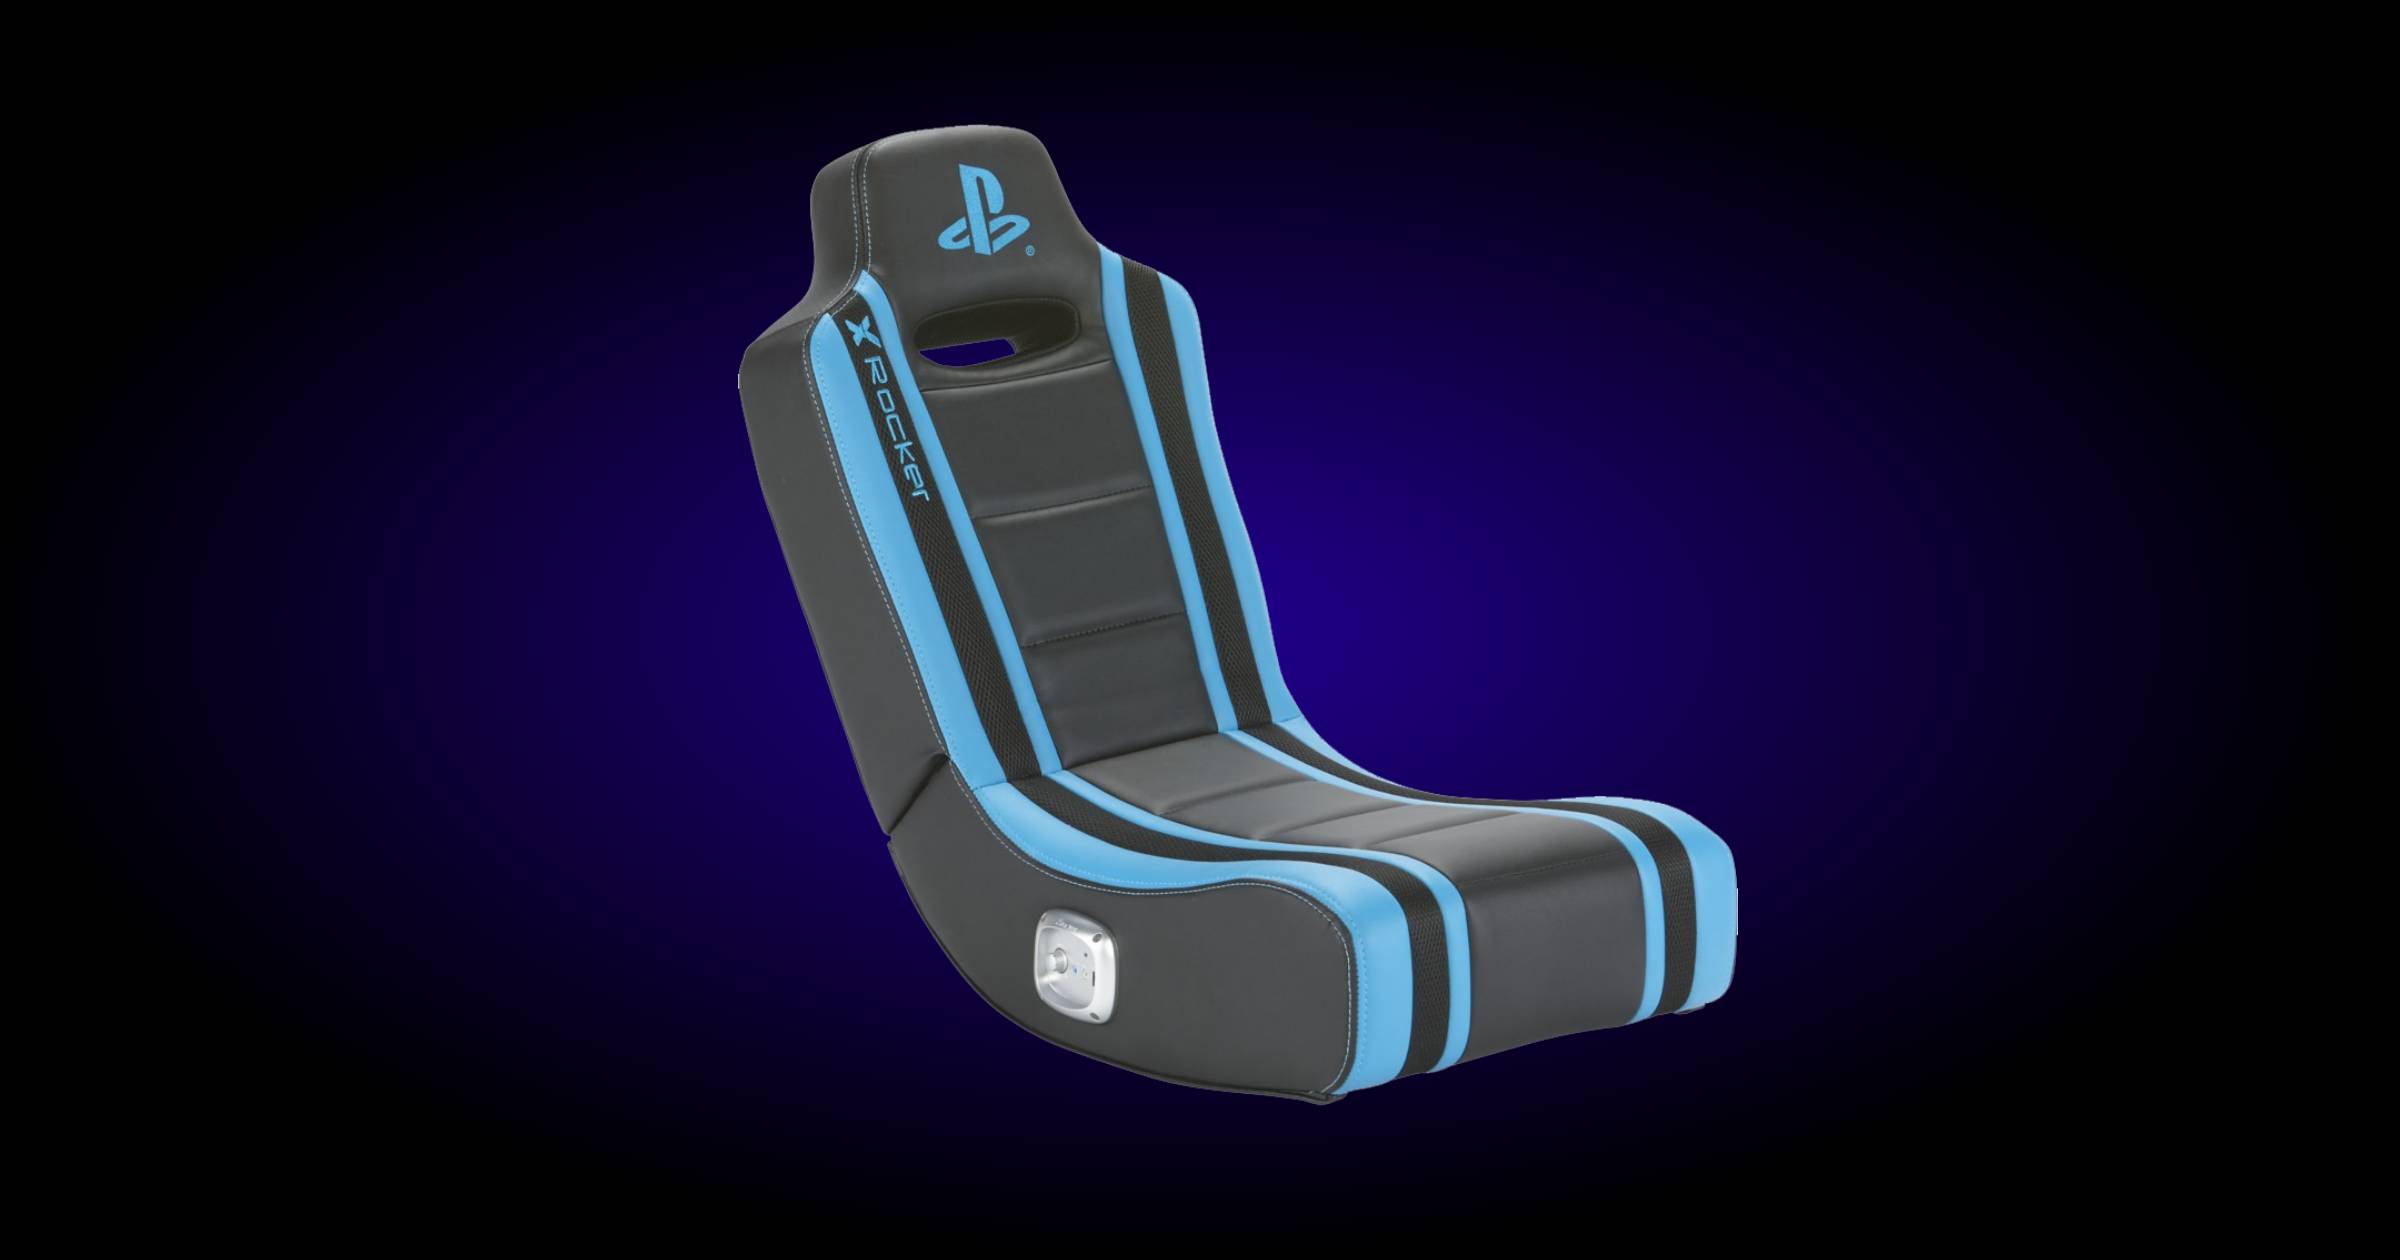 X Rocker Official PlayStation Geist 2.0 Rocker Chair